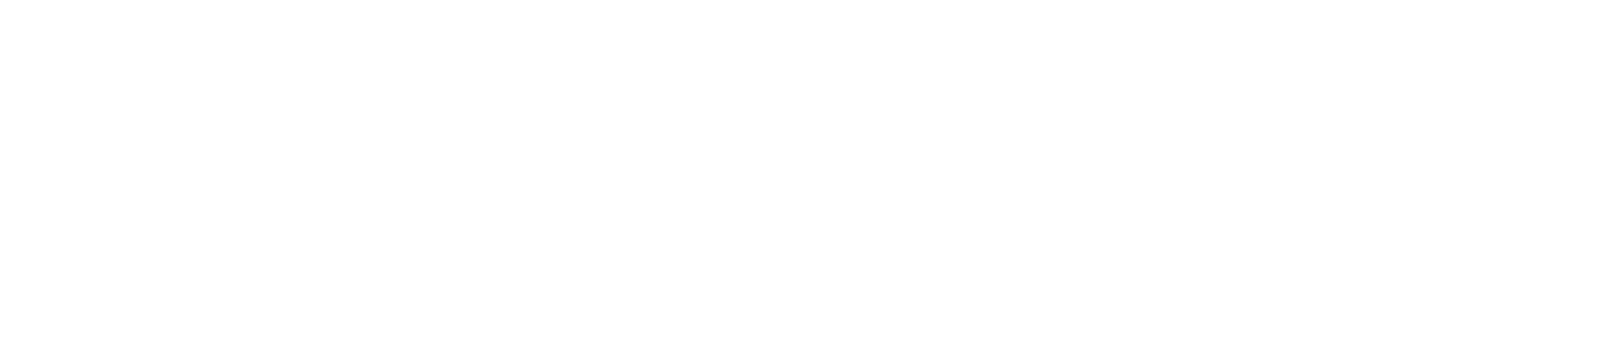 Upfield logo black